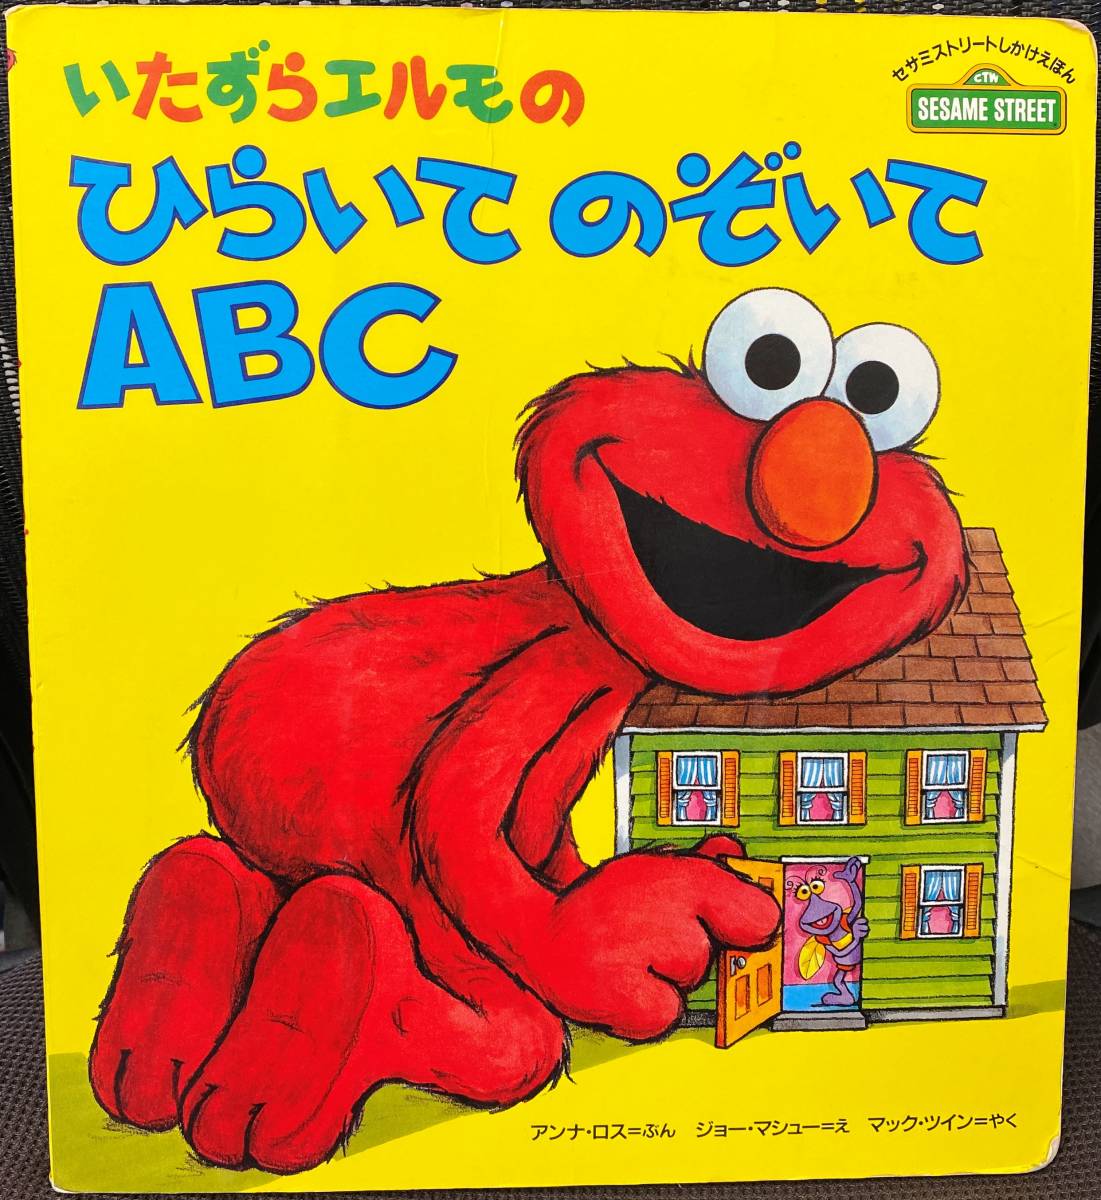  баловство Elmo. обычный ... ...ABC ( Улица Сезам только ....) | б/у книга